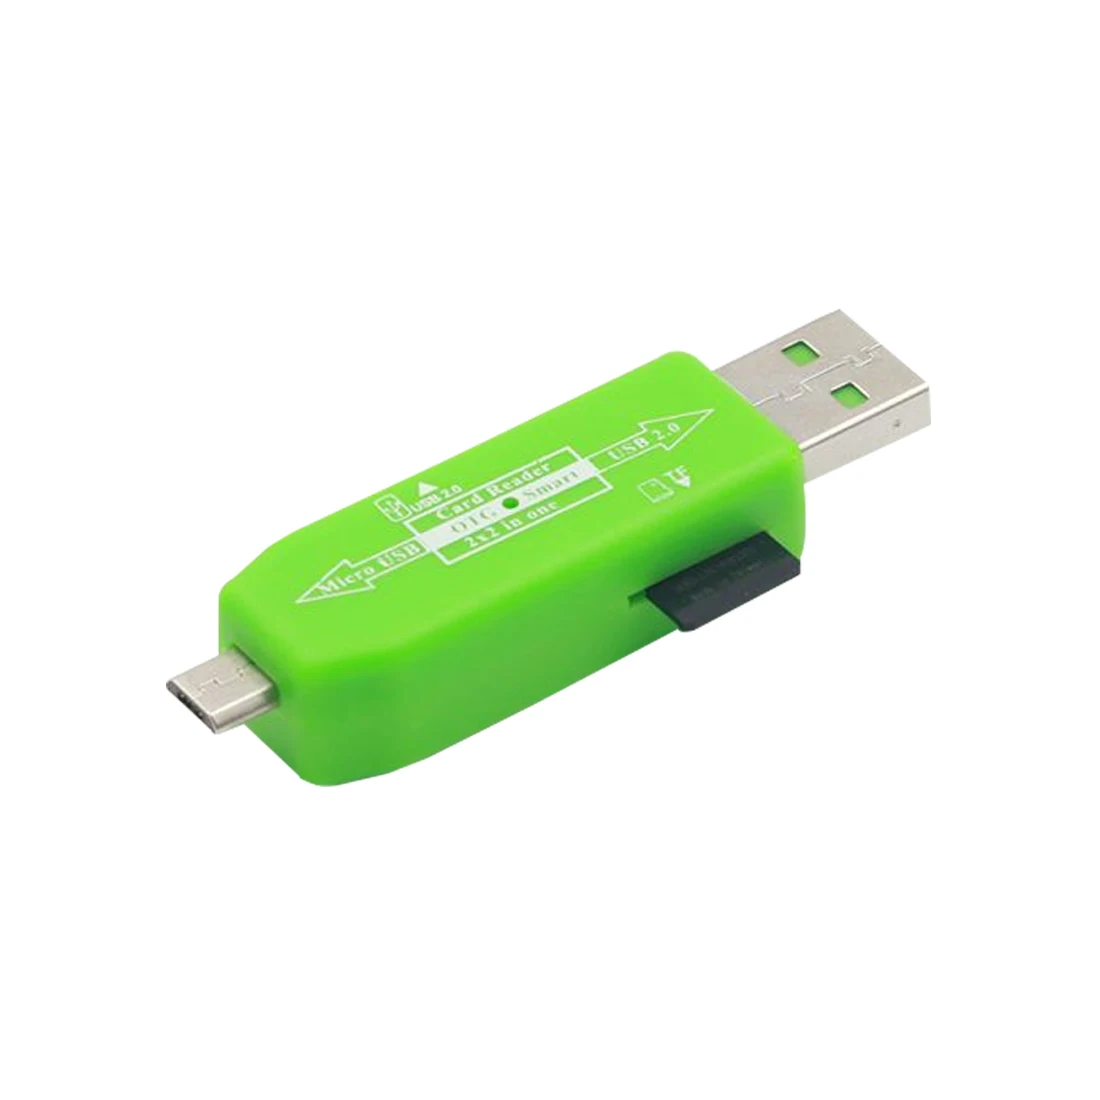 Etmakit Новый OTG кард-ридер USB 2,0 концентратор Универсальный Micro TF кард-ридер адаптер комплект подключения для Android мобильного телефона